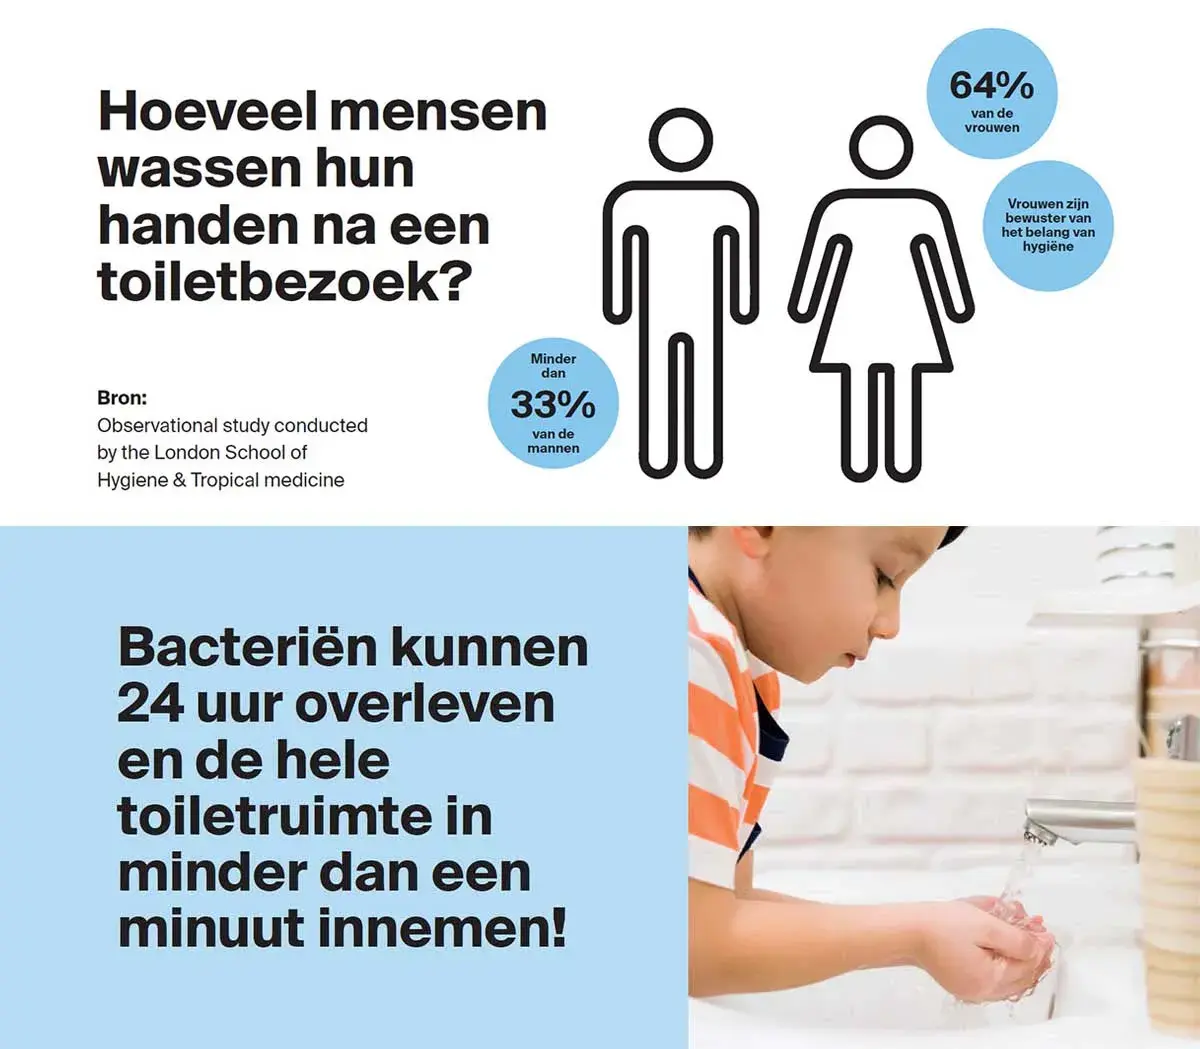 Hoeveel mensen wassen hun handen na toiletbezoek